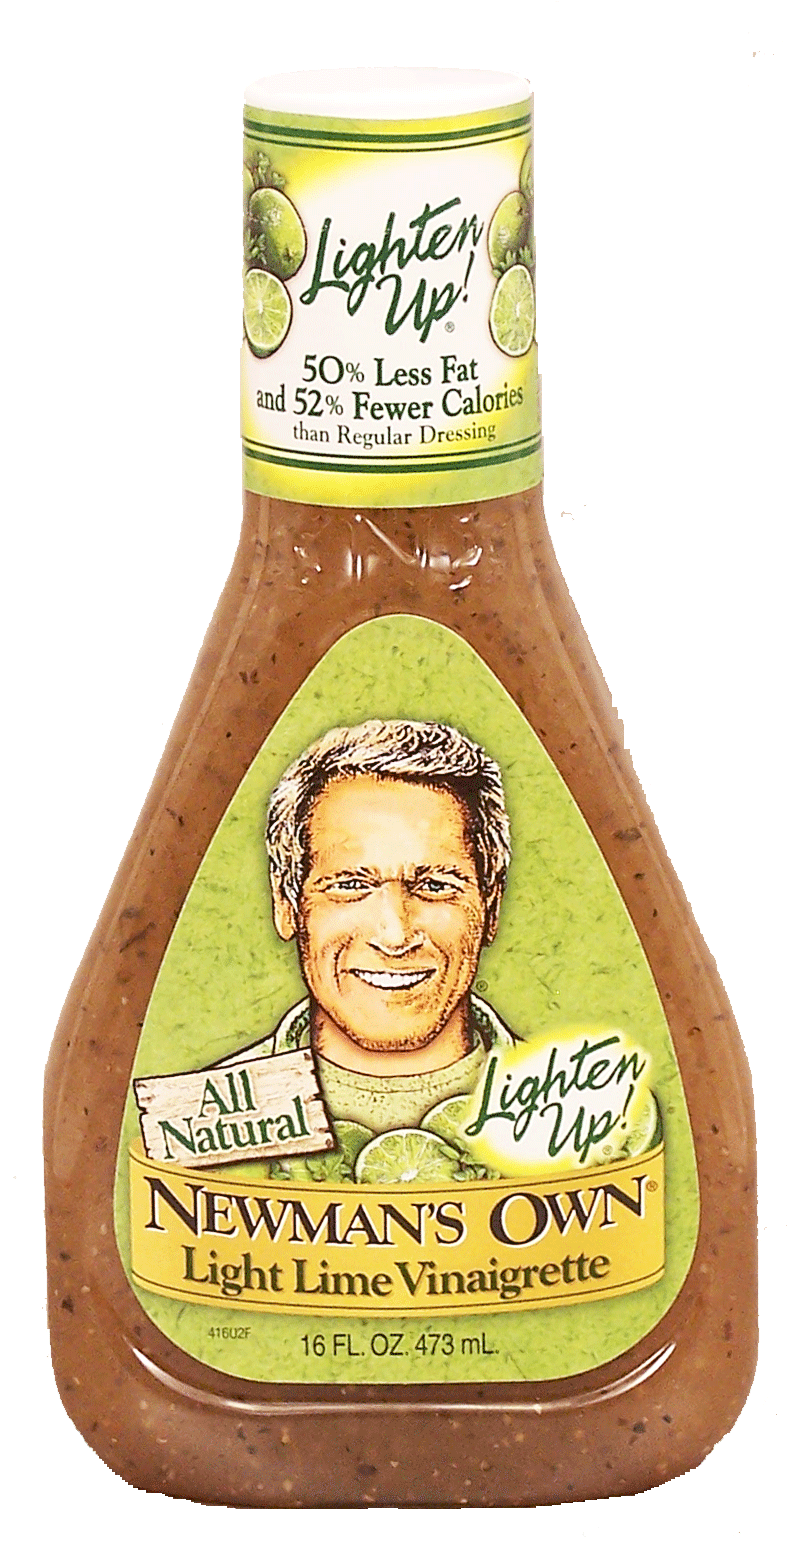 Newman's Own Lighten Up! light lime vinaigrette Full-Size Picture